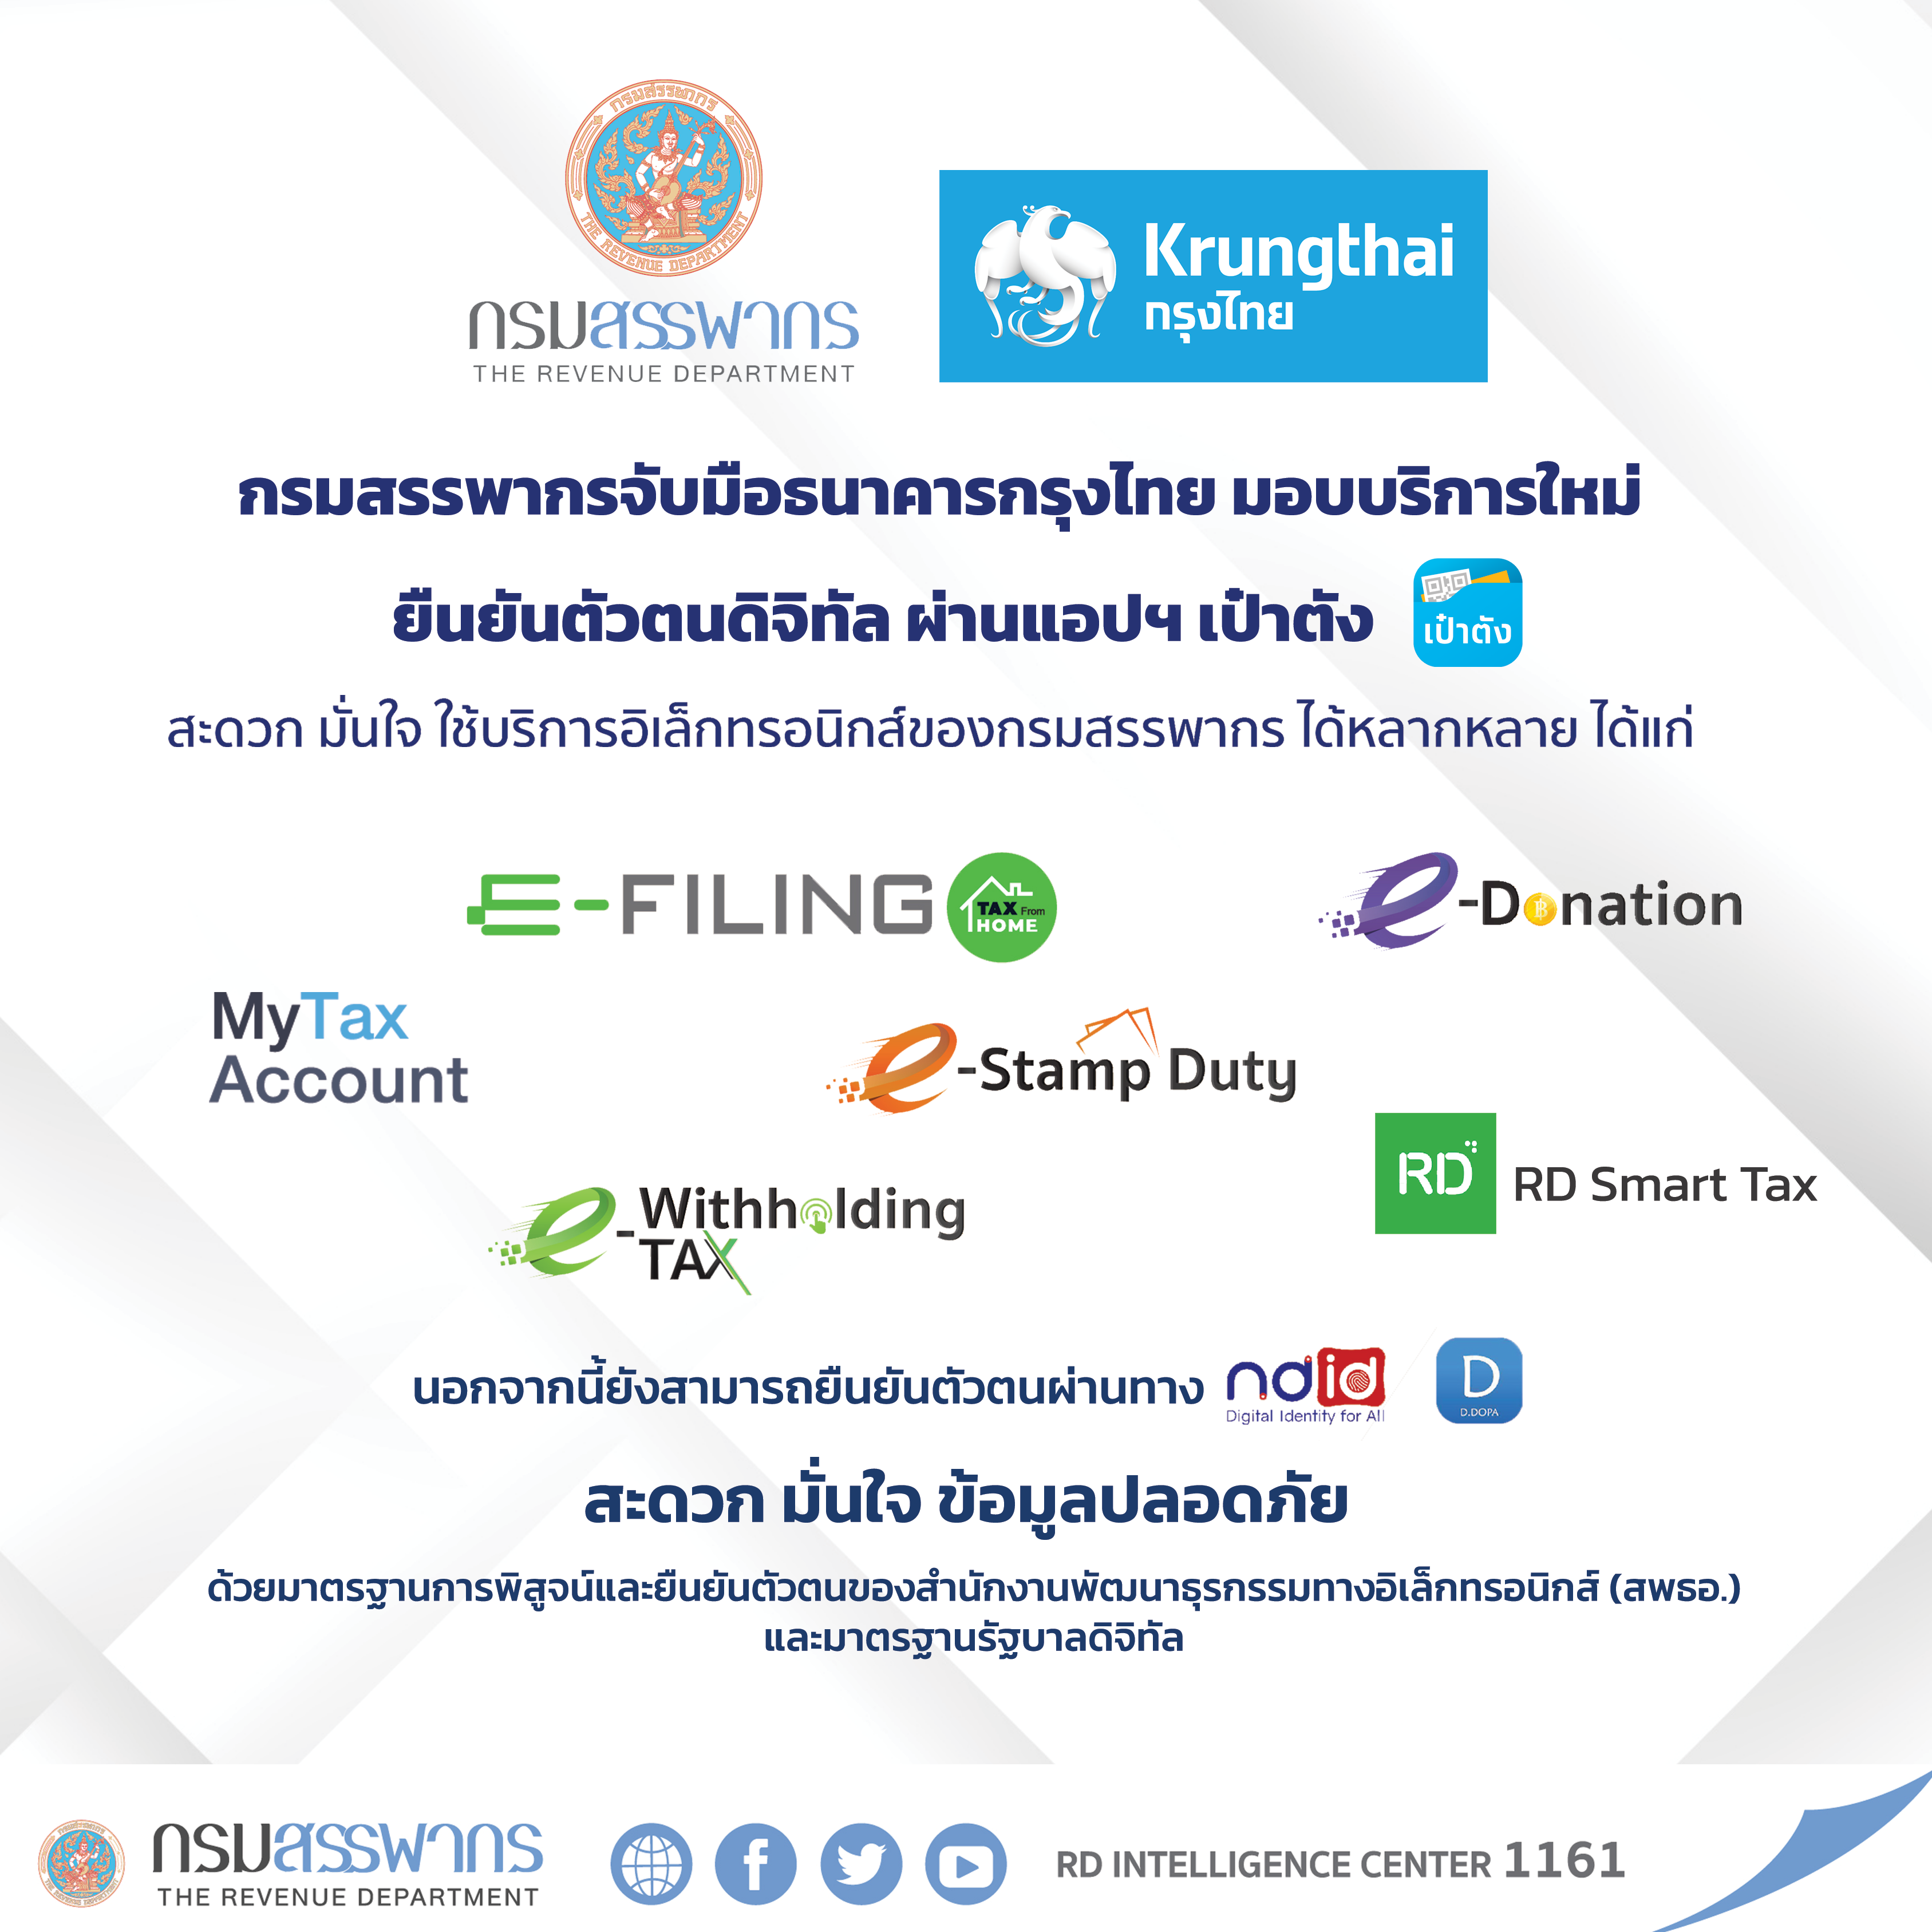 กรมสรรพากรจับมือธนาคารกรุงไทยเพิ่มทางเลือกใหม่ให้ผู้เสียภาษียืนยันตัวตนทางอิเล็กทรอนิกส์ 	 ผ่านแอปฯ “เป๋าตัง”